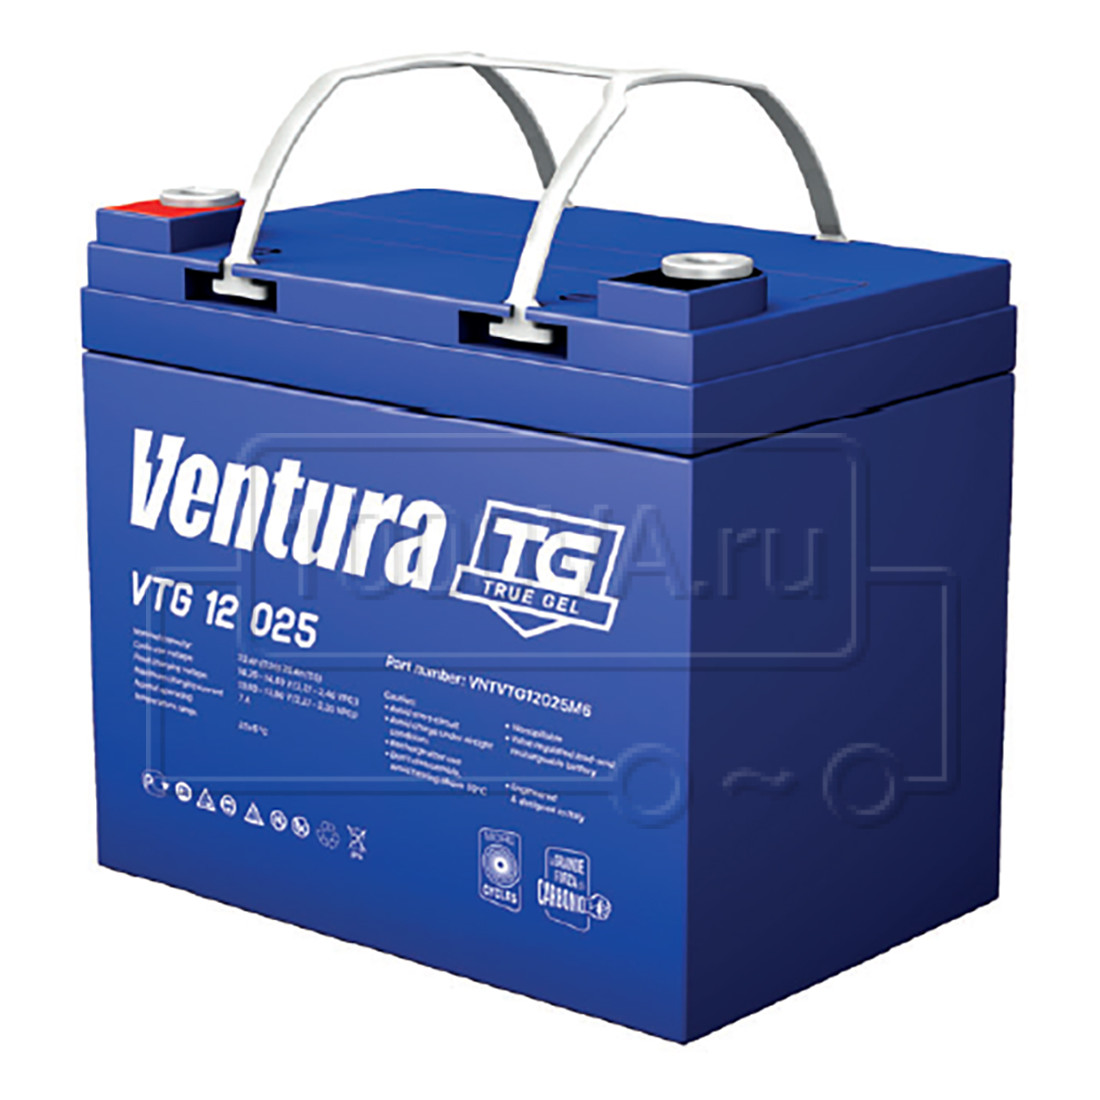 Ventura VTG 12 025 M6